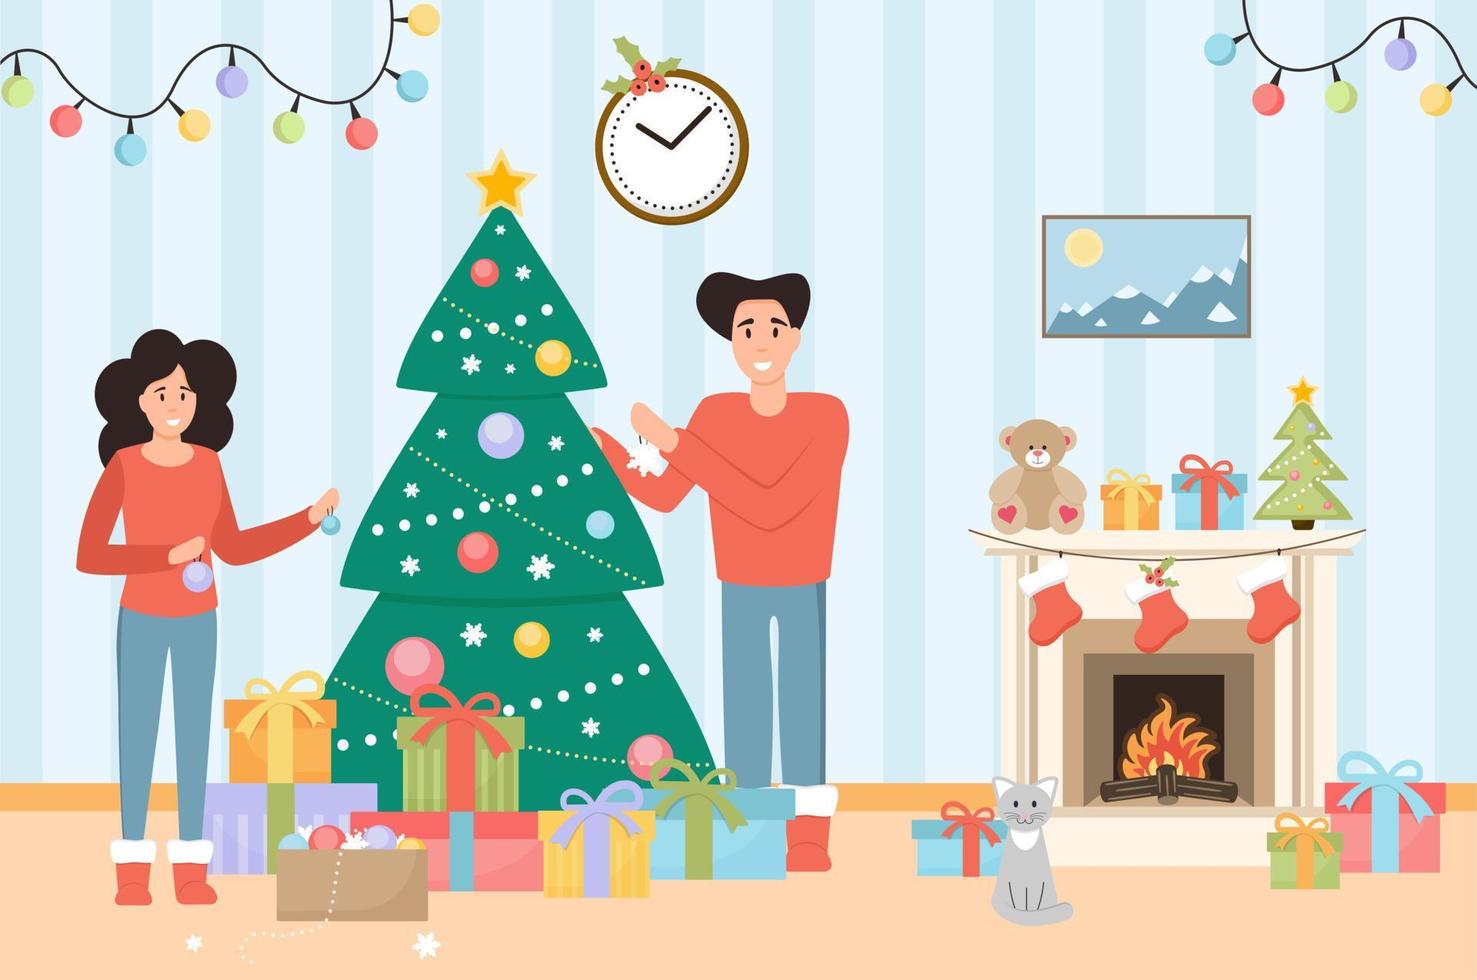 interior de la habitación de navidad con pareja de amor. celebración familiar de navidad en casa. árbol de navidad, cajas de regalo, chimenea, gato y decoración. vector